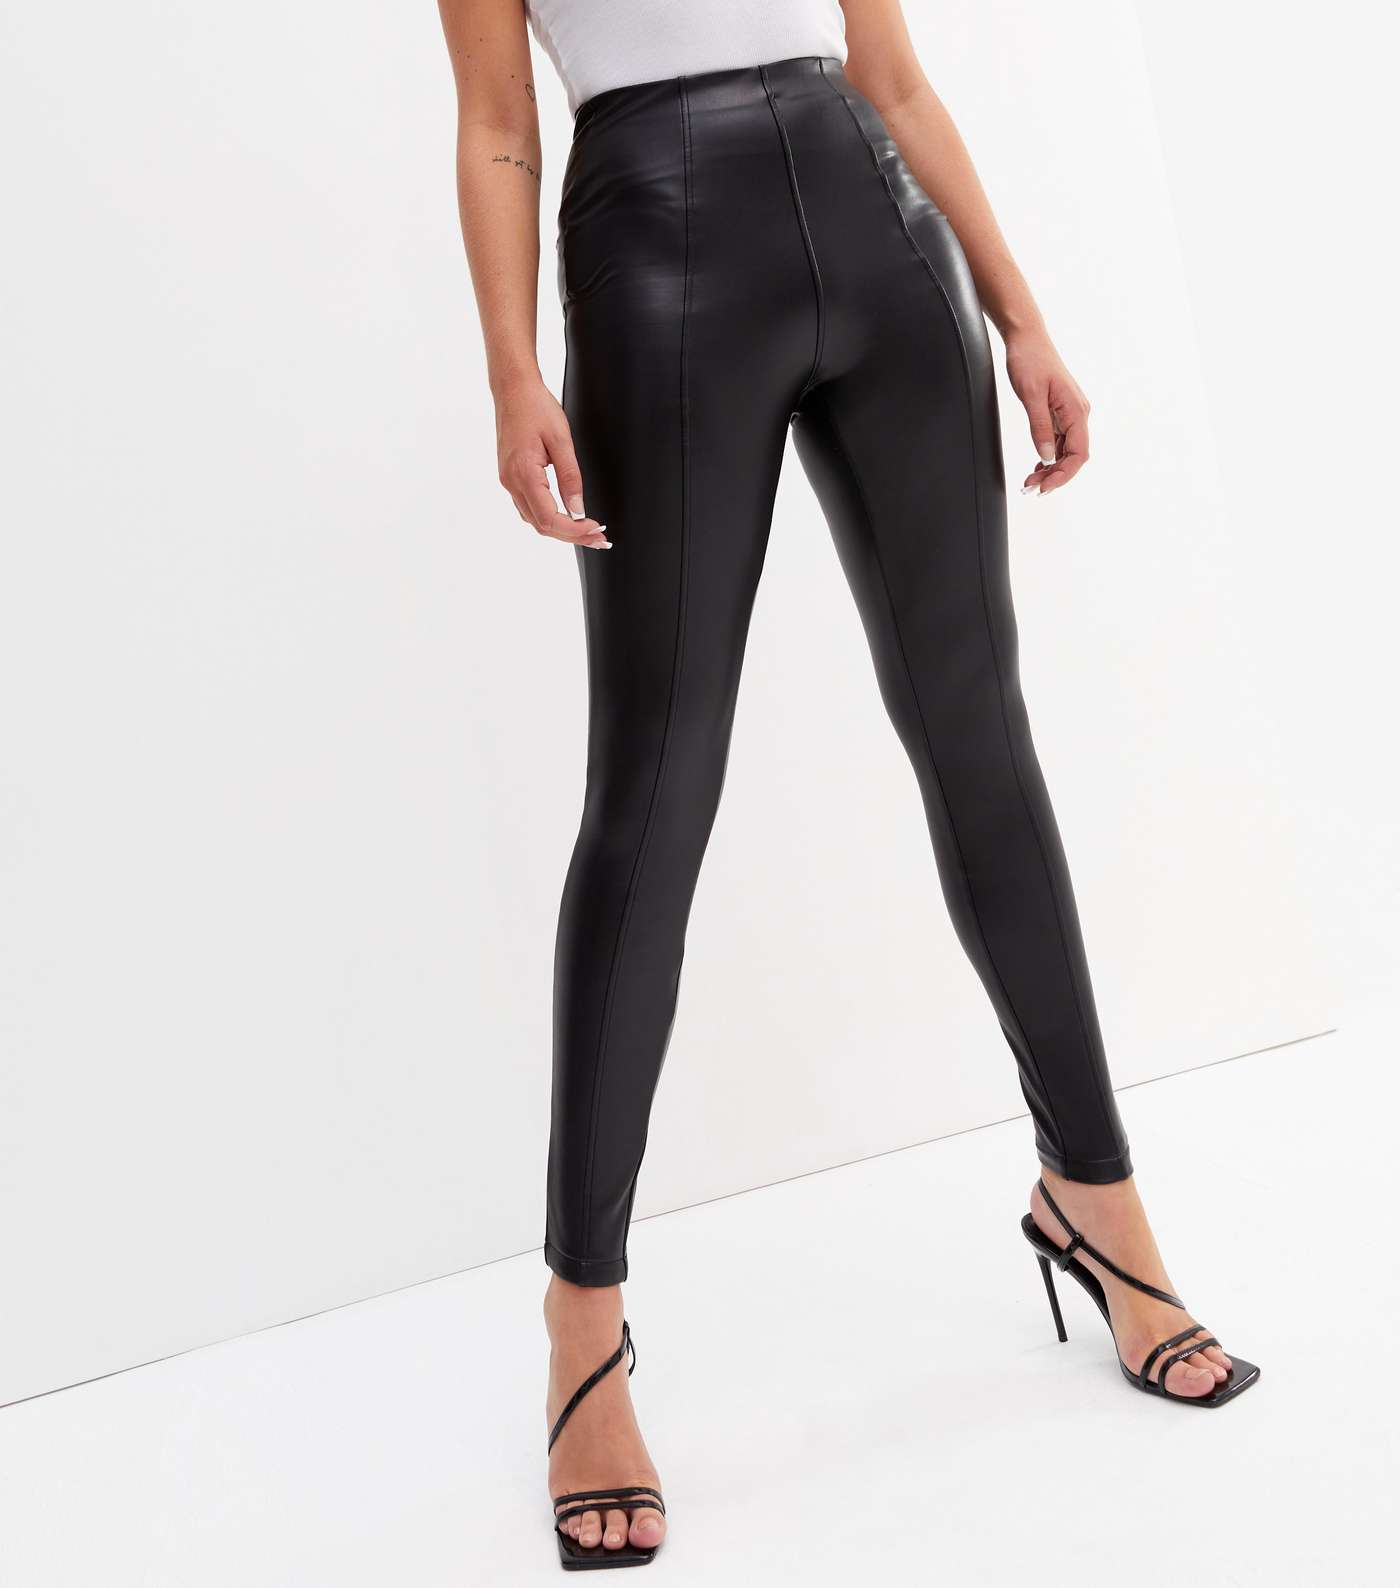 Tall Black Leather-Look High Waist Leggings Image 2